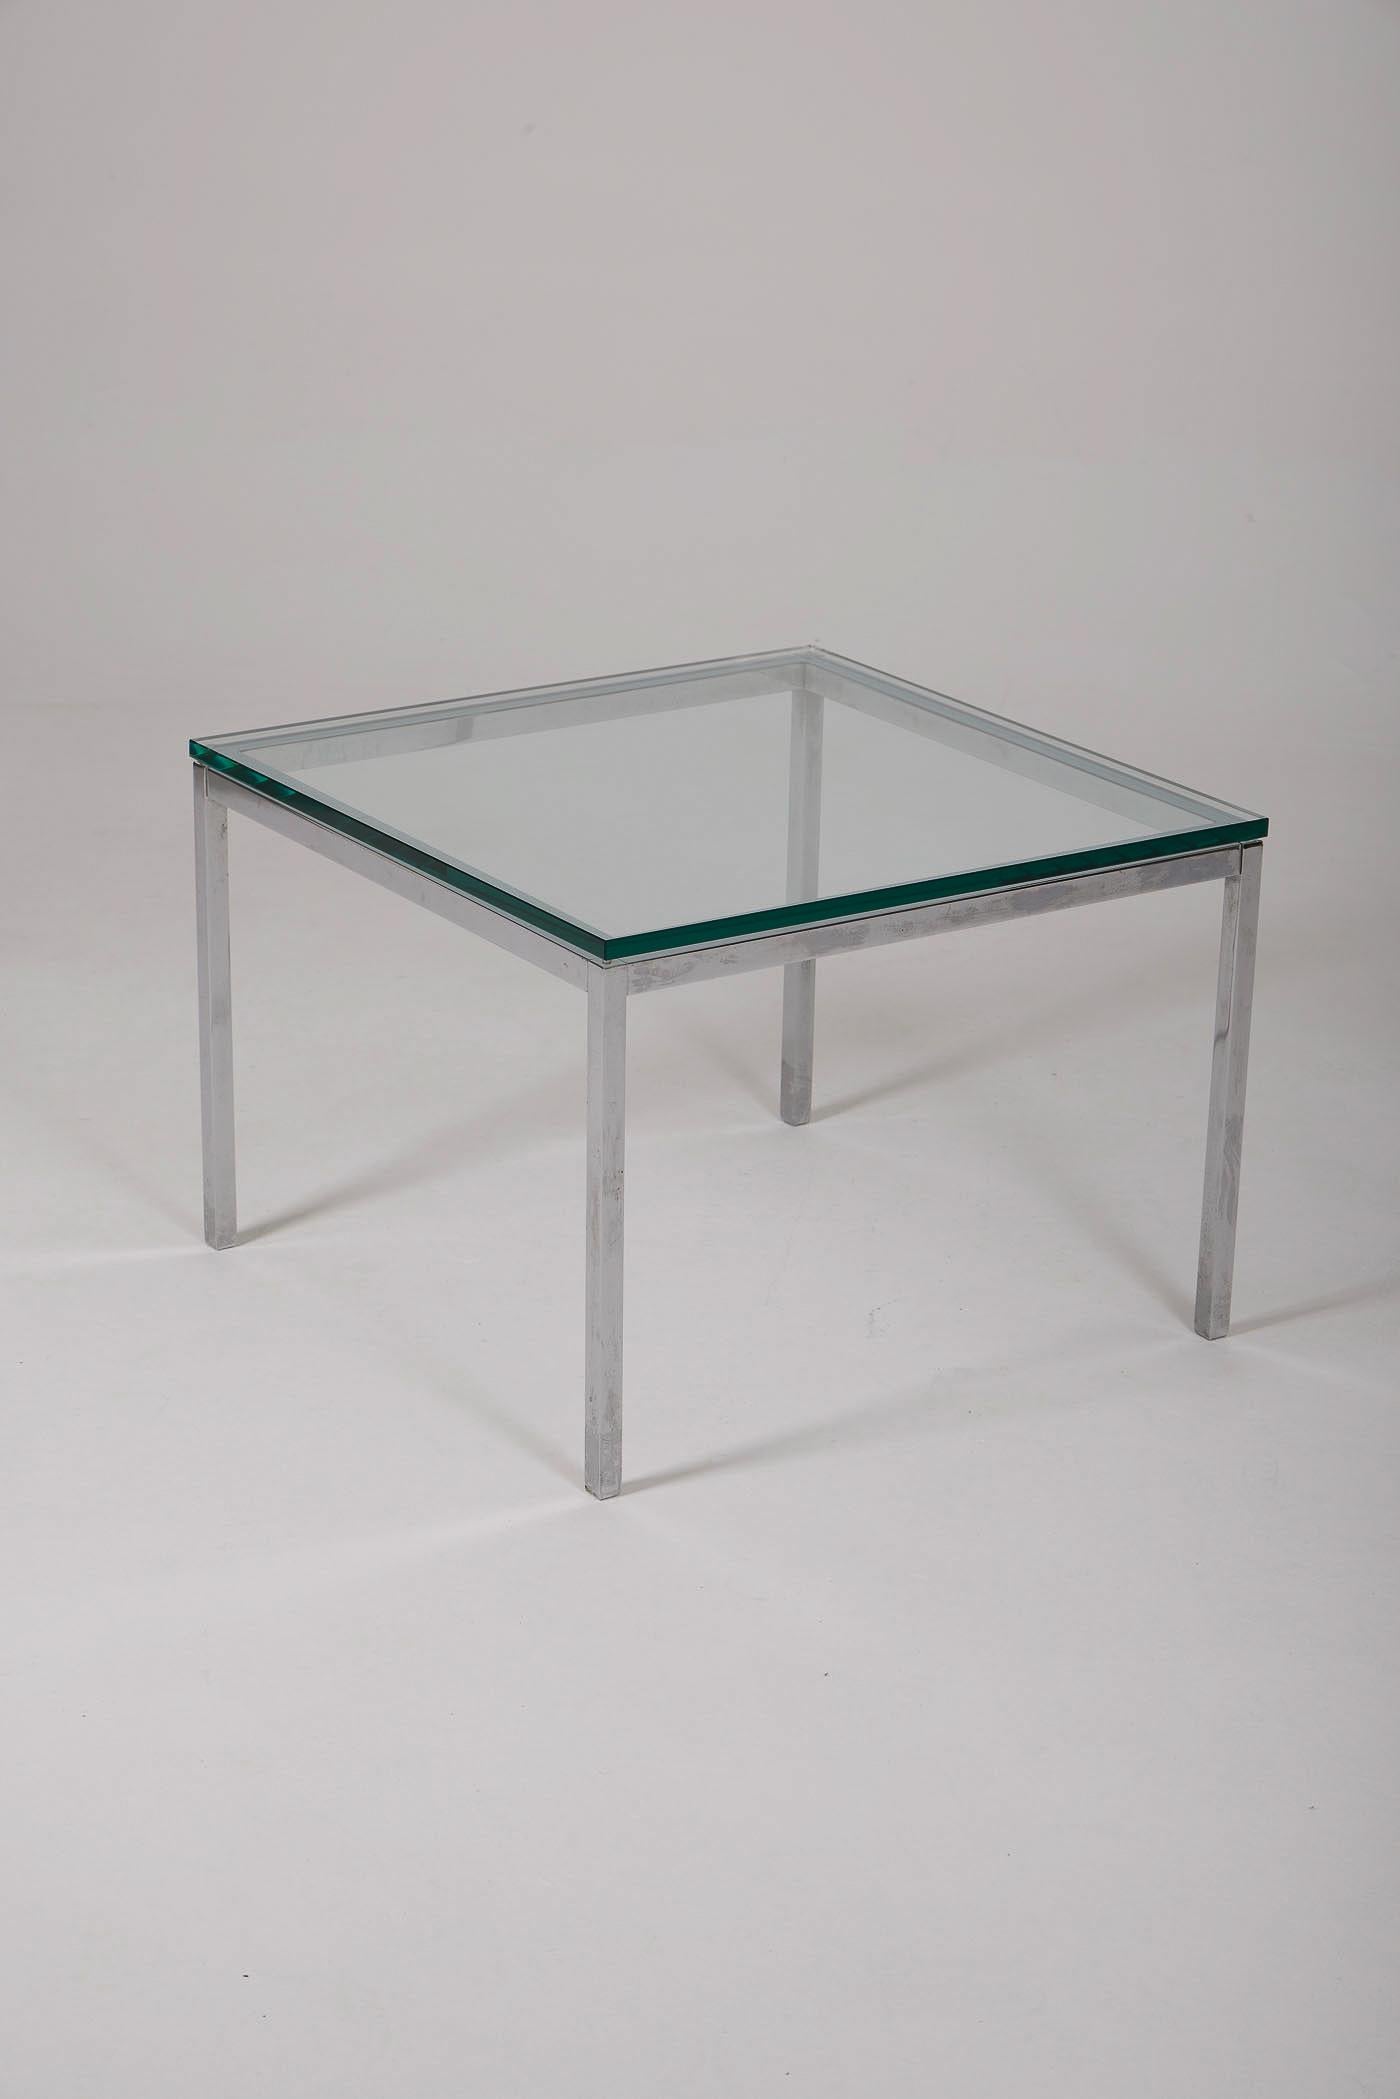 Table basse de la designer Florence Knoll pour Knoll International, datant des années 1970. La structure est en acier soudé et chromé. Le plateau de la table est en verre épais. 2 tables disponibles. Très bon état.
DV433